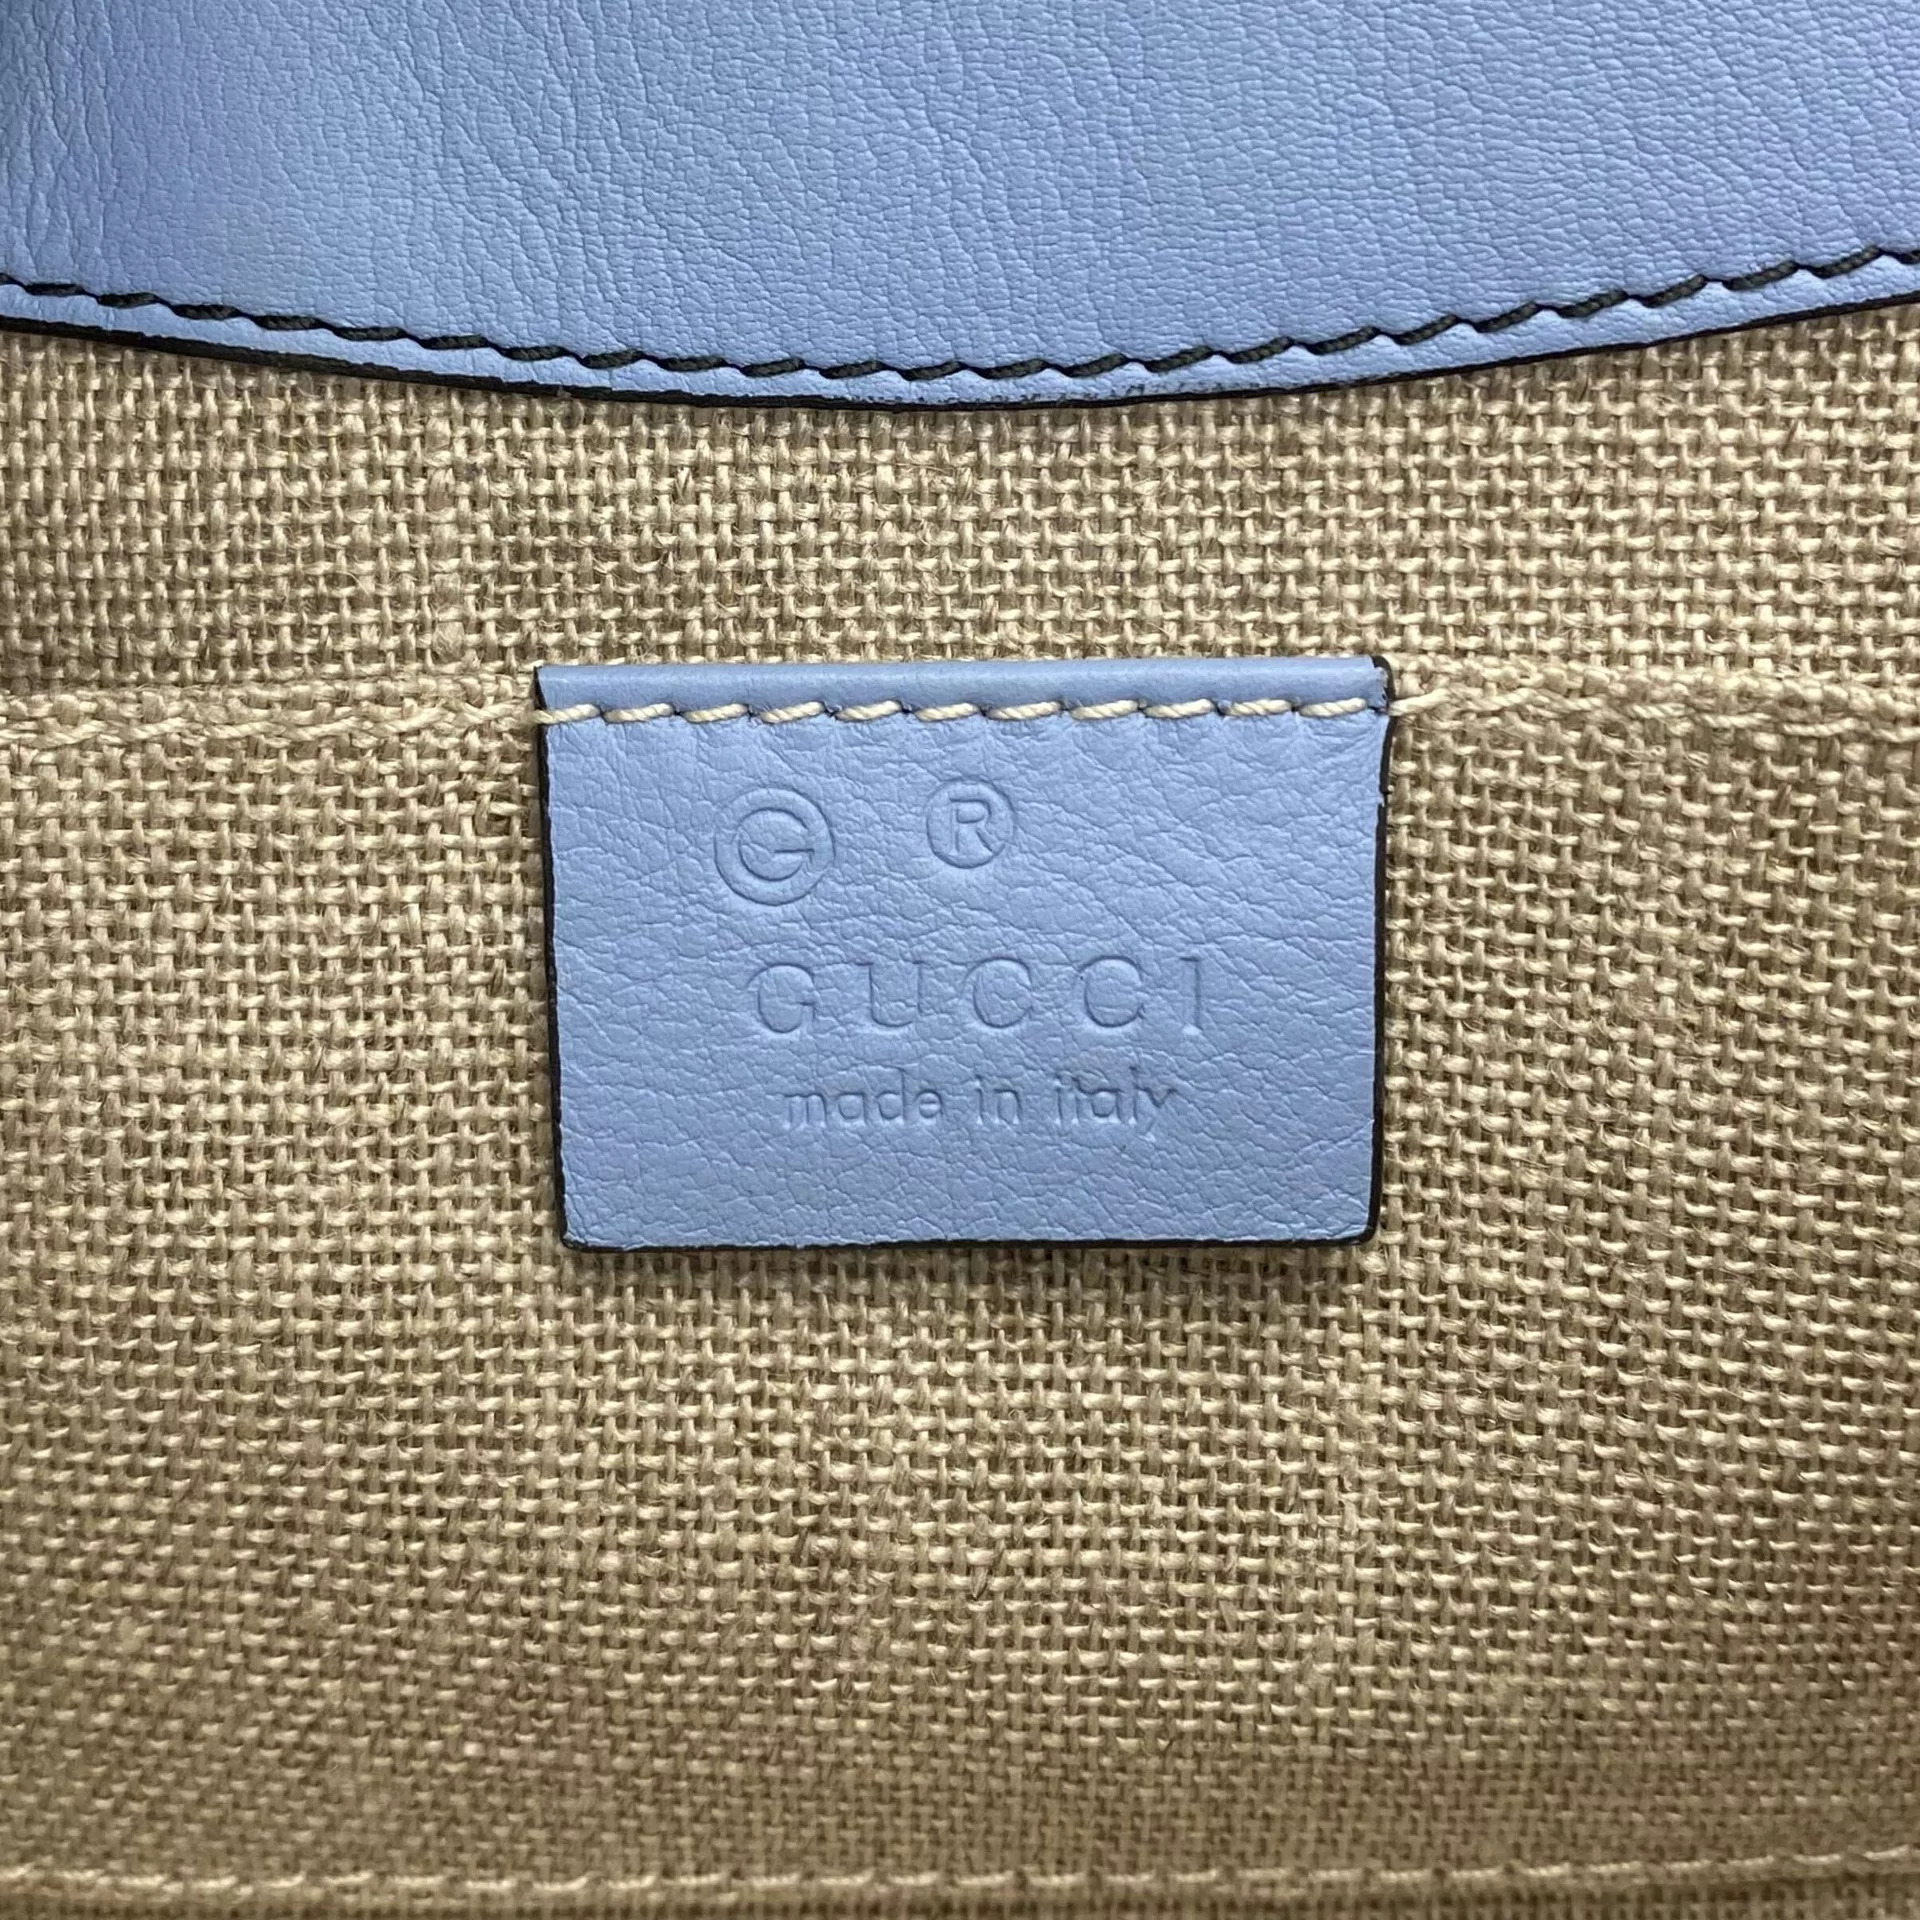 Bolsa Gucci Emily Azul Pequena